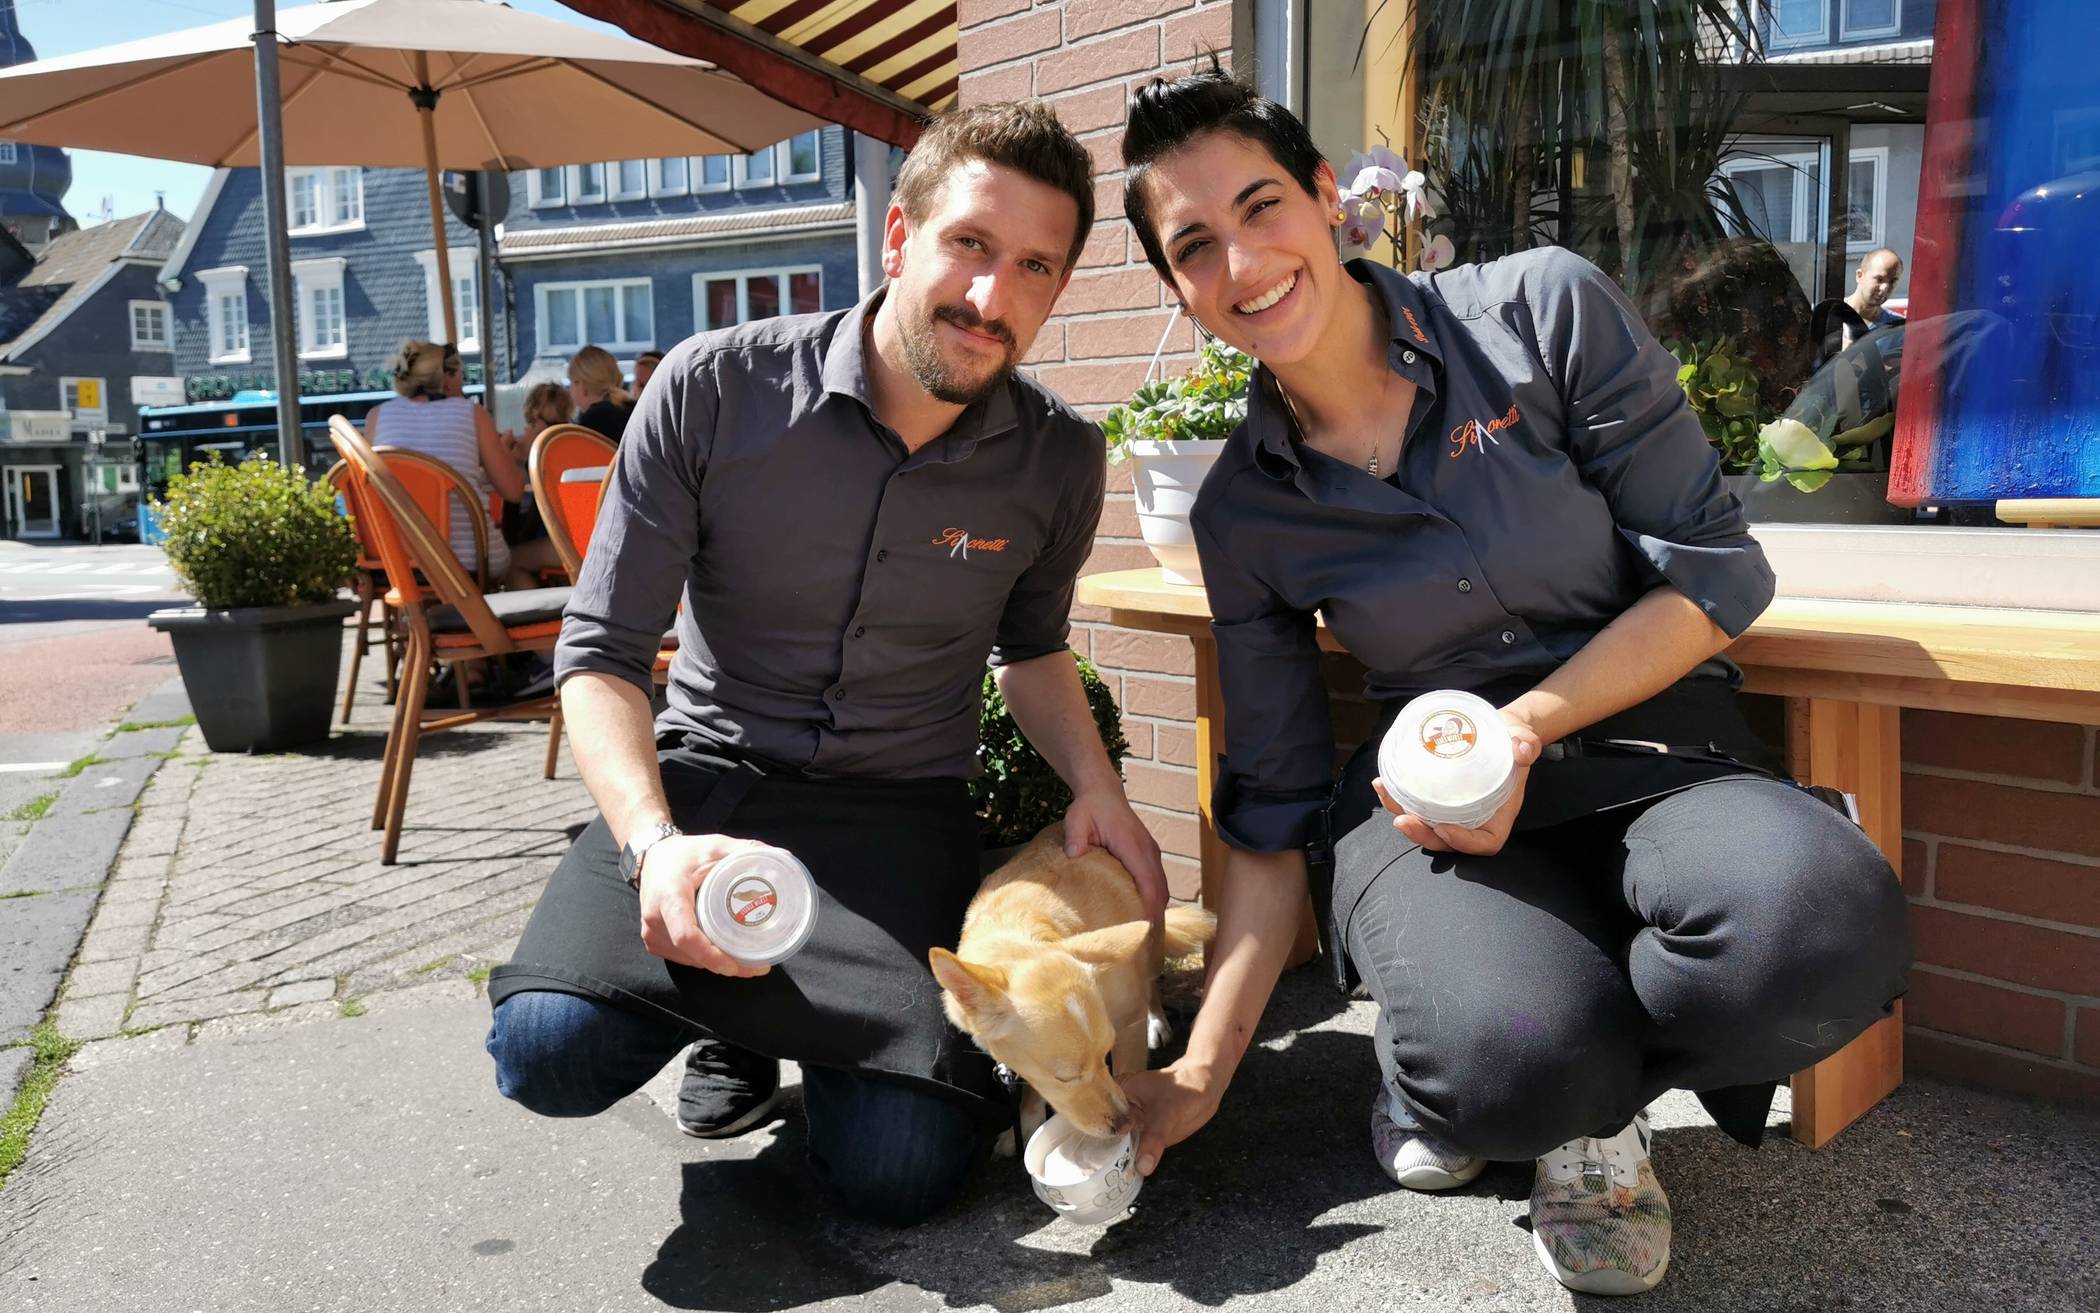  Dog Gelato - das Schild ist kein Scherz. Seit diesem Sommer verkaufen Daniela Sergi und Massimiliano Pol in ihrem Eiscafé in Cronenberg Eis speziell für Hunde. 